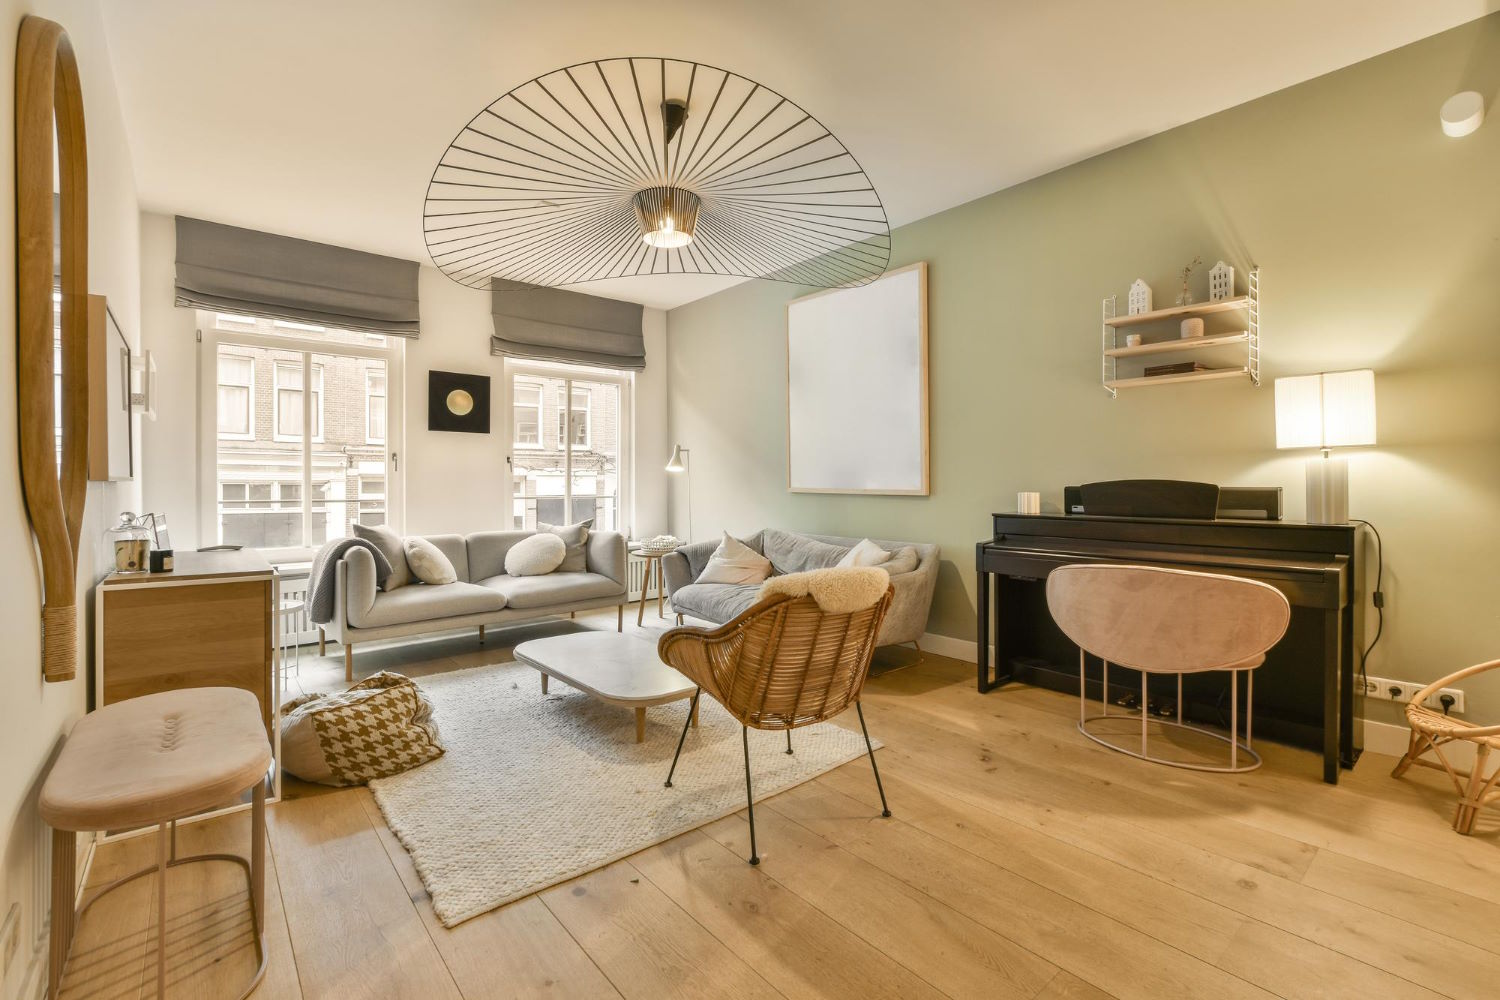 Deski podłogowe z prawdziwego drewna – styl i elegancja w Twoim domu